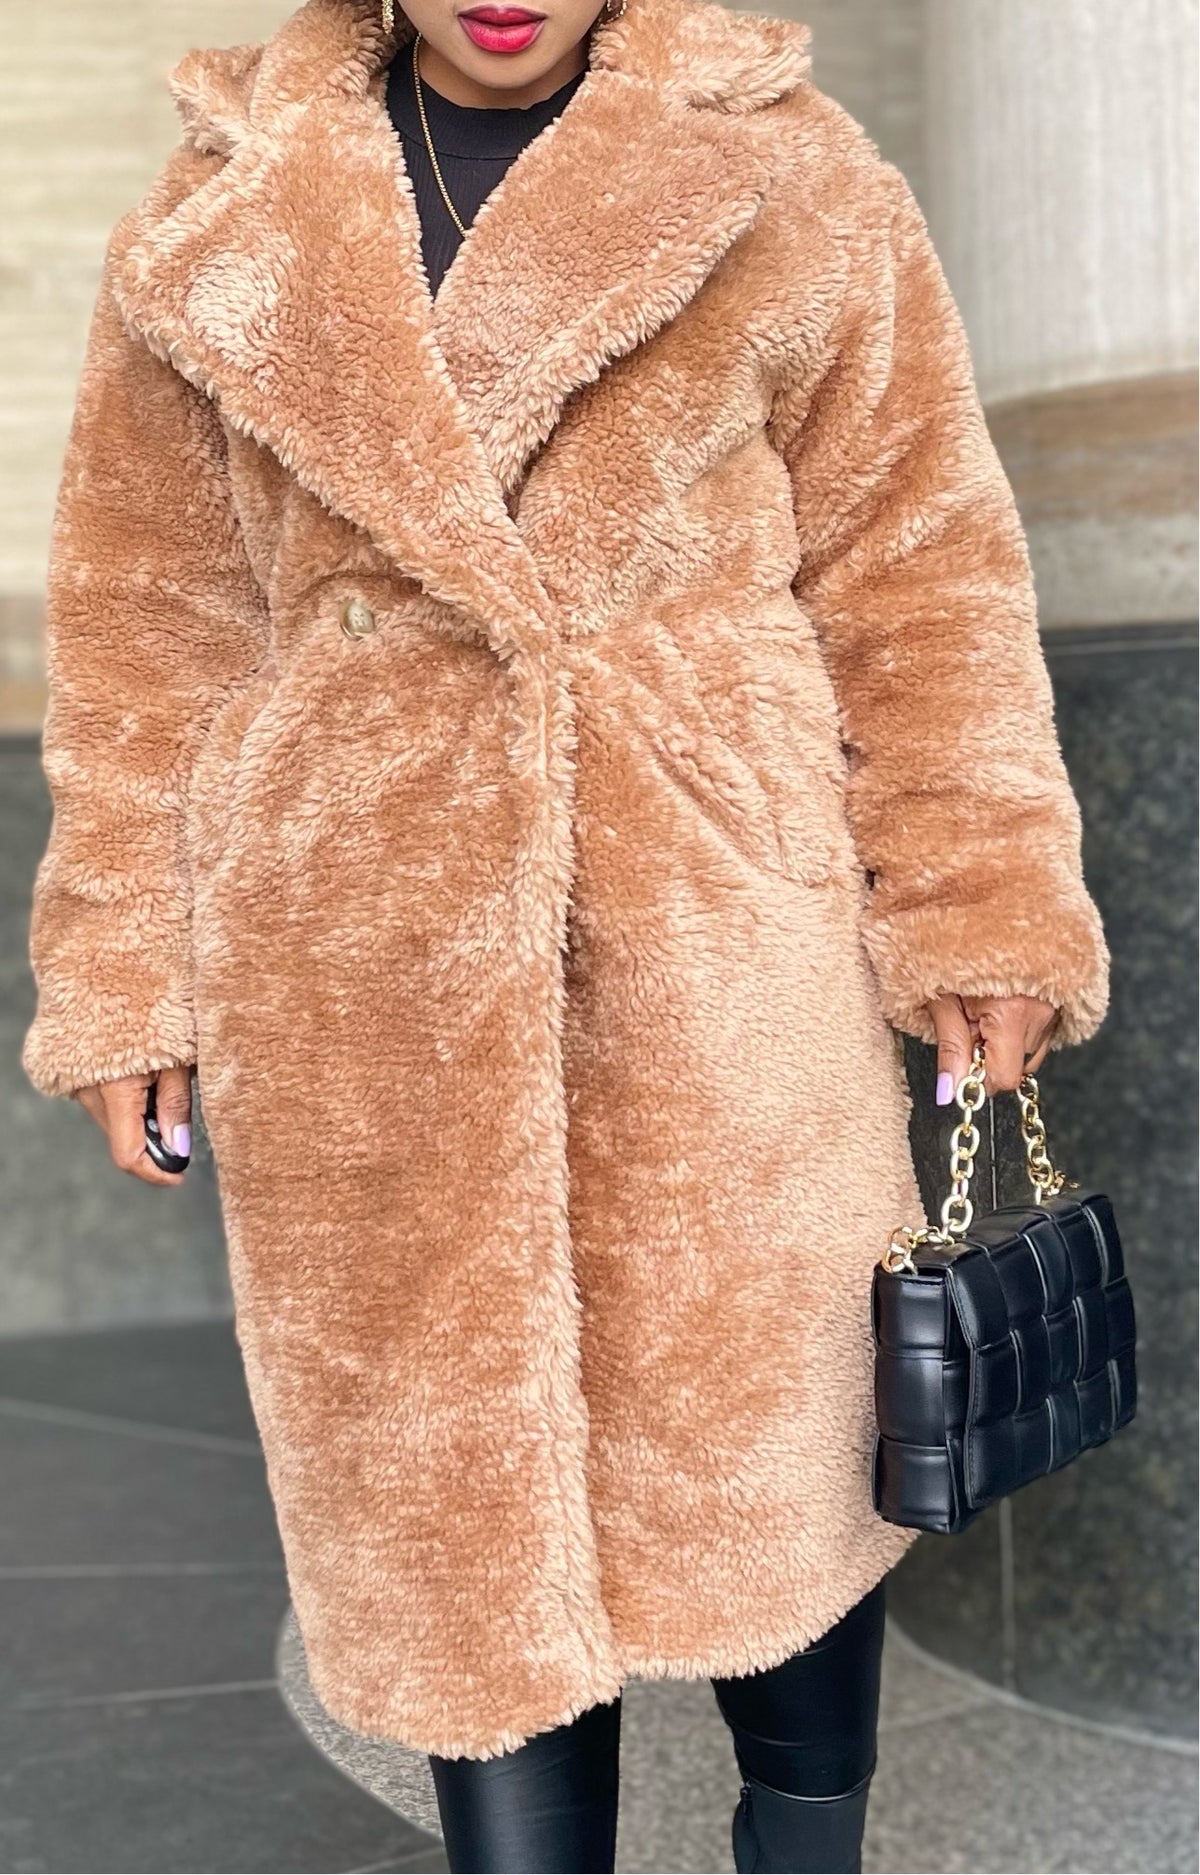 womens teddy bear coat | teddy bear coat womens | long teddy bear coat | teddy bear coat